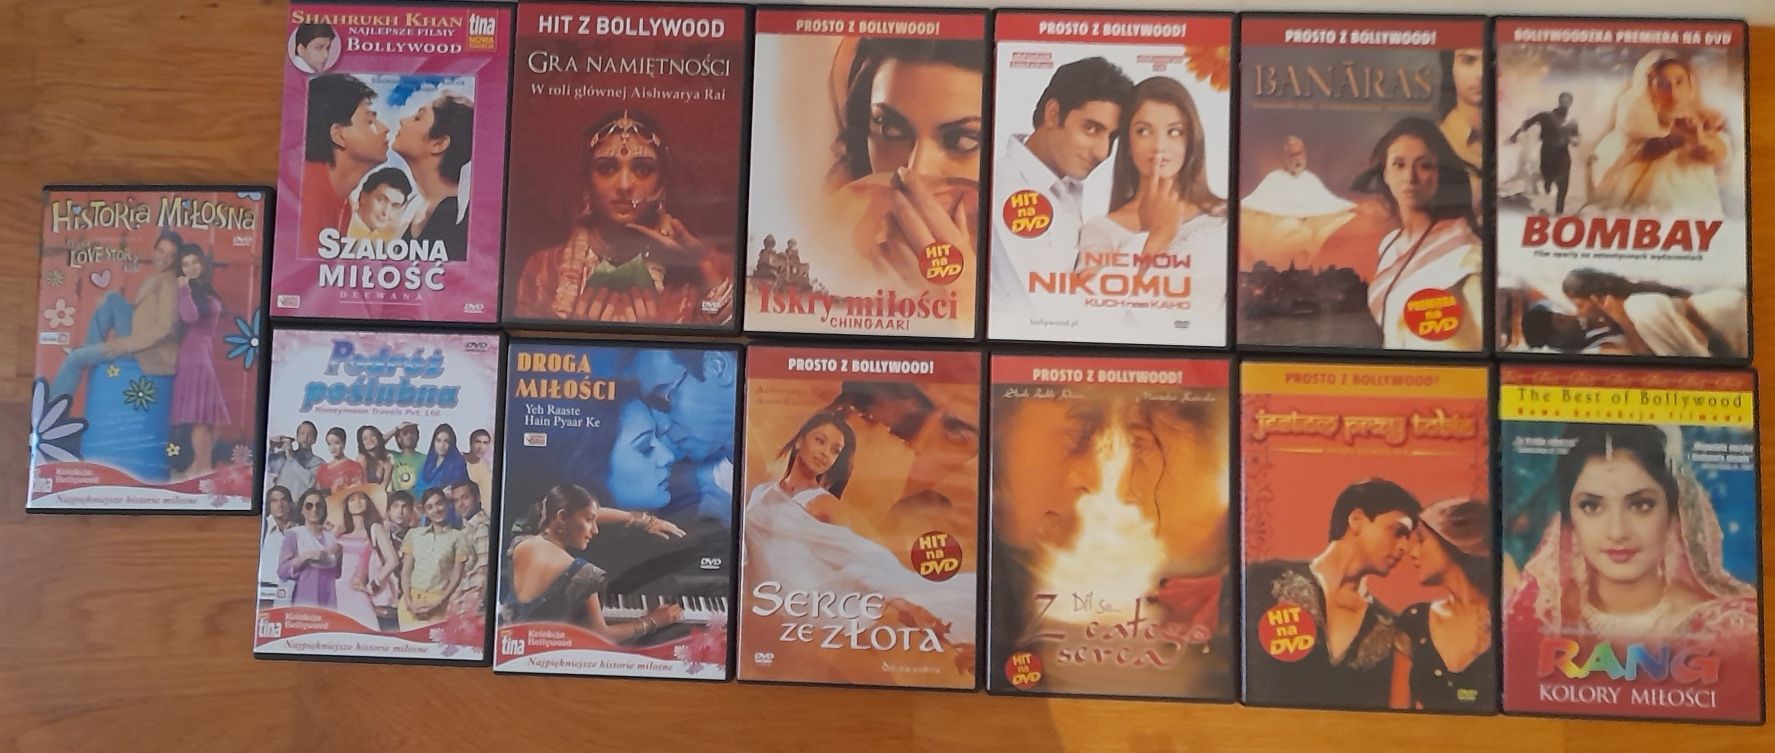 Kino, Zestaw filmów DVD Bollywood, filmy Bollywood, dvd Bollywood,